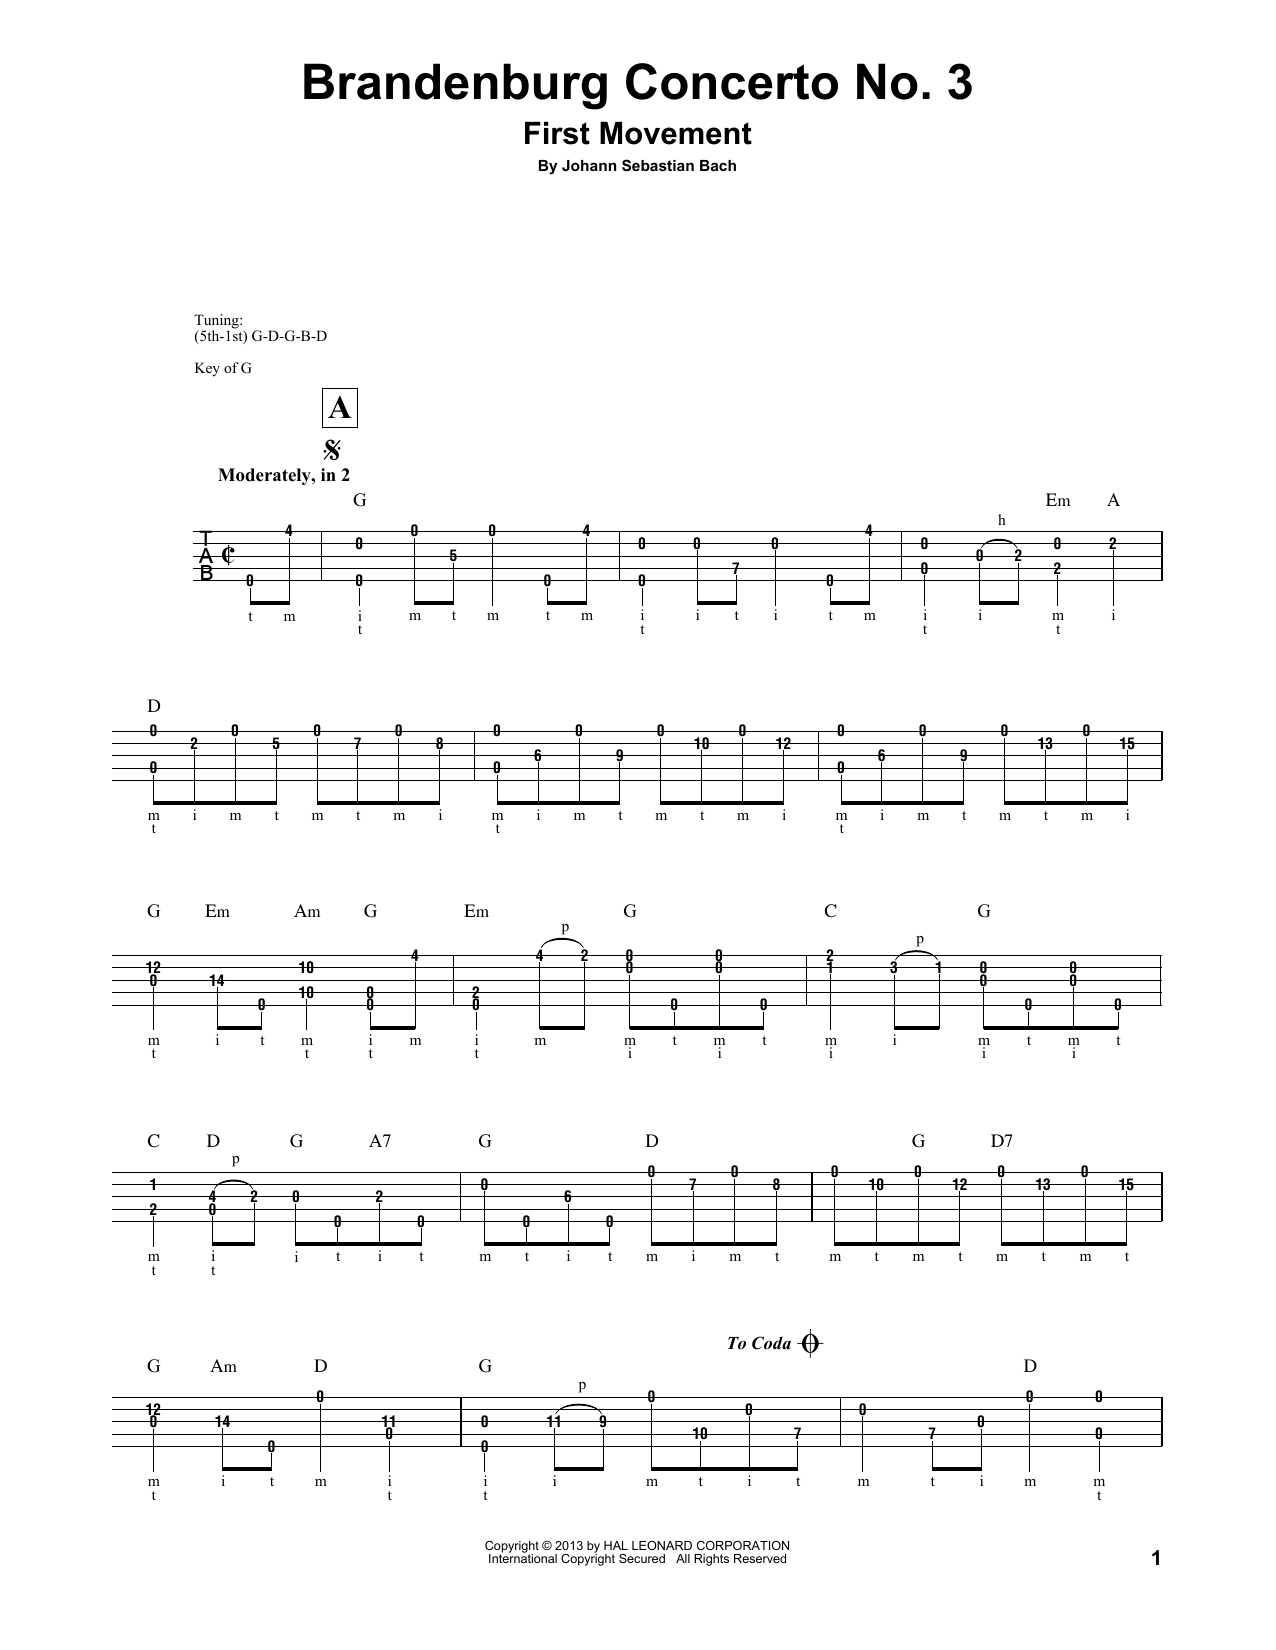 J.S. Bach Brandenburg Concerto No. 3 Sheet Music Notes & Chords for Banjo - Download or Print PDF